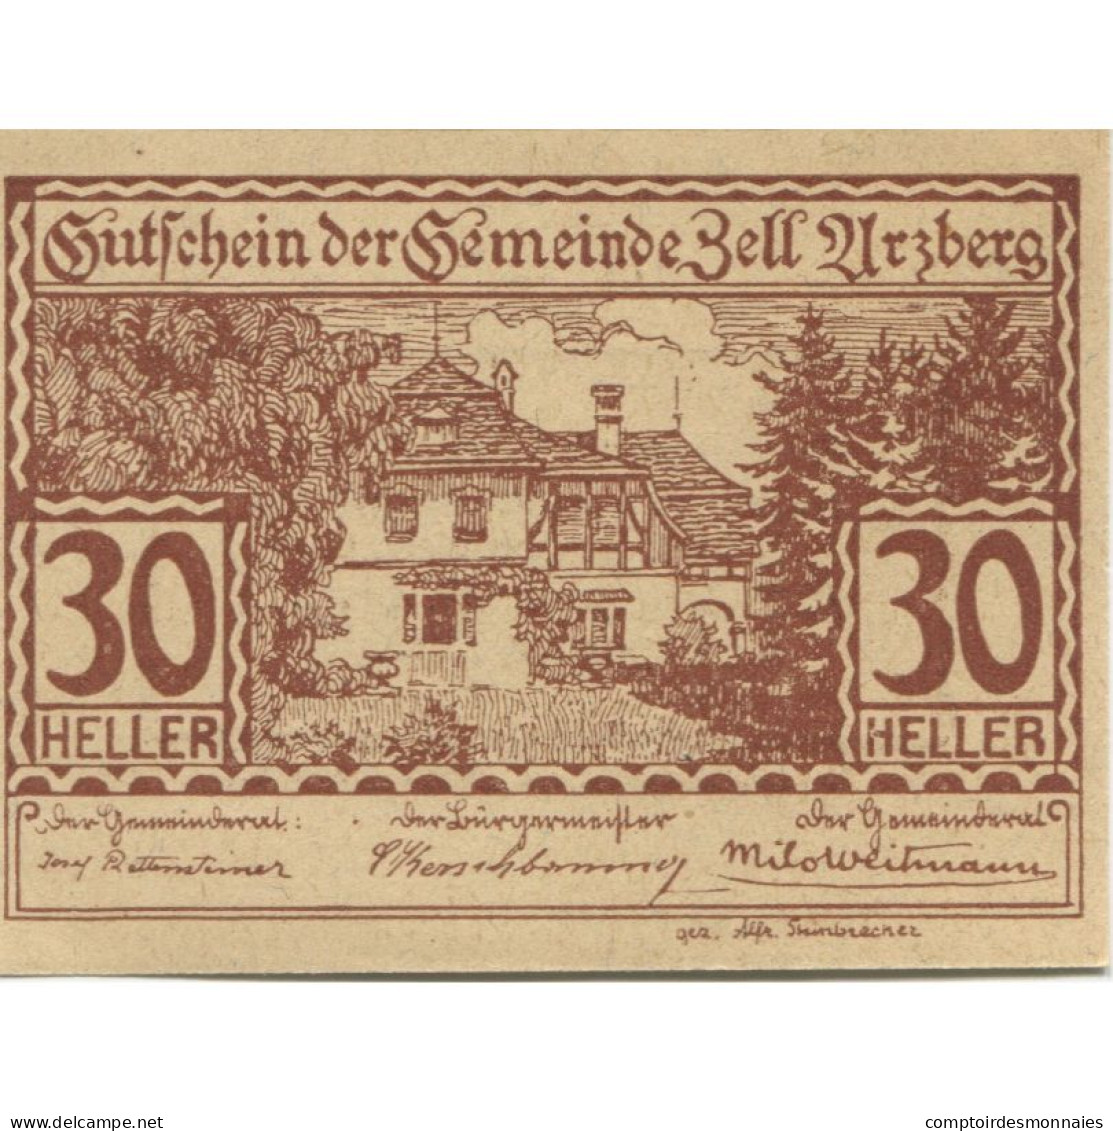 Billet, Autriche, Zell Arzberg, 30 Heller, Ferme 1920-12-31, SPL, Mehl:FS 1273a - Oesterreich